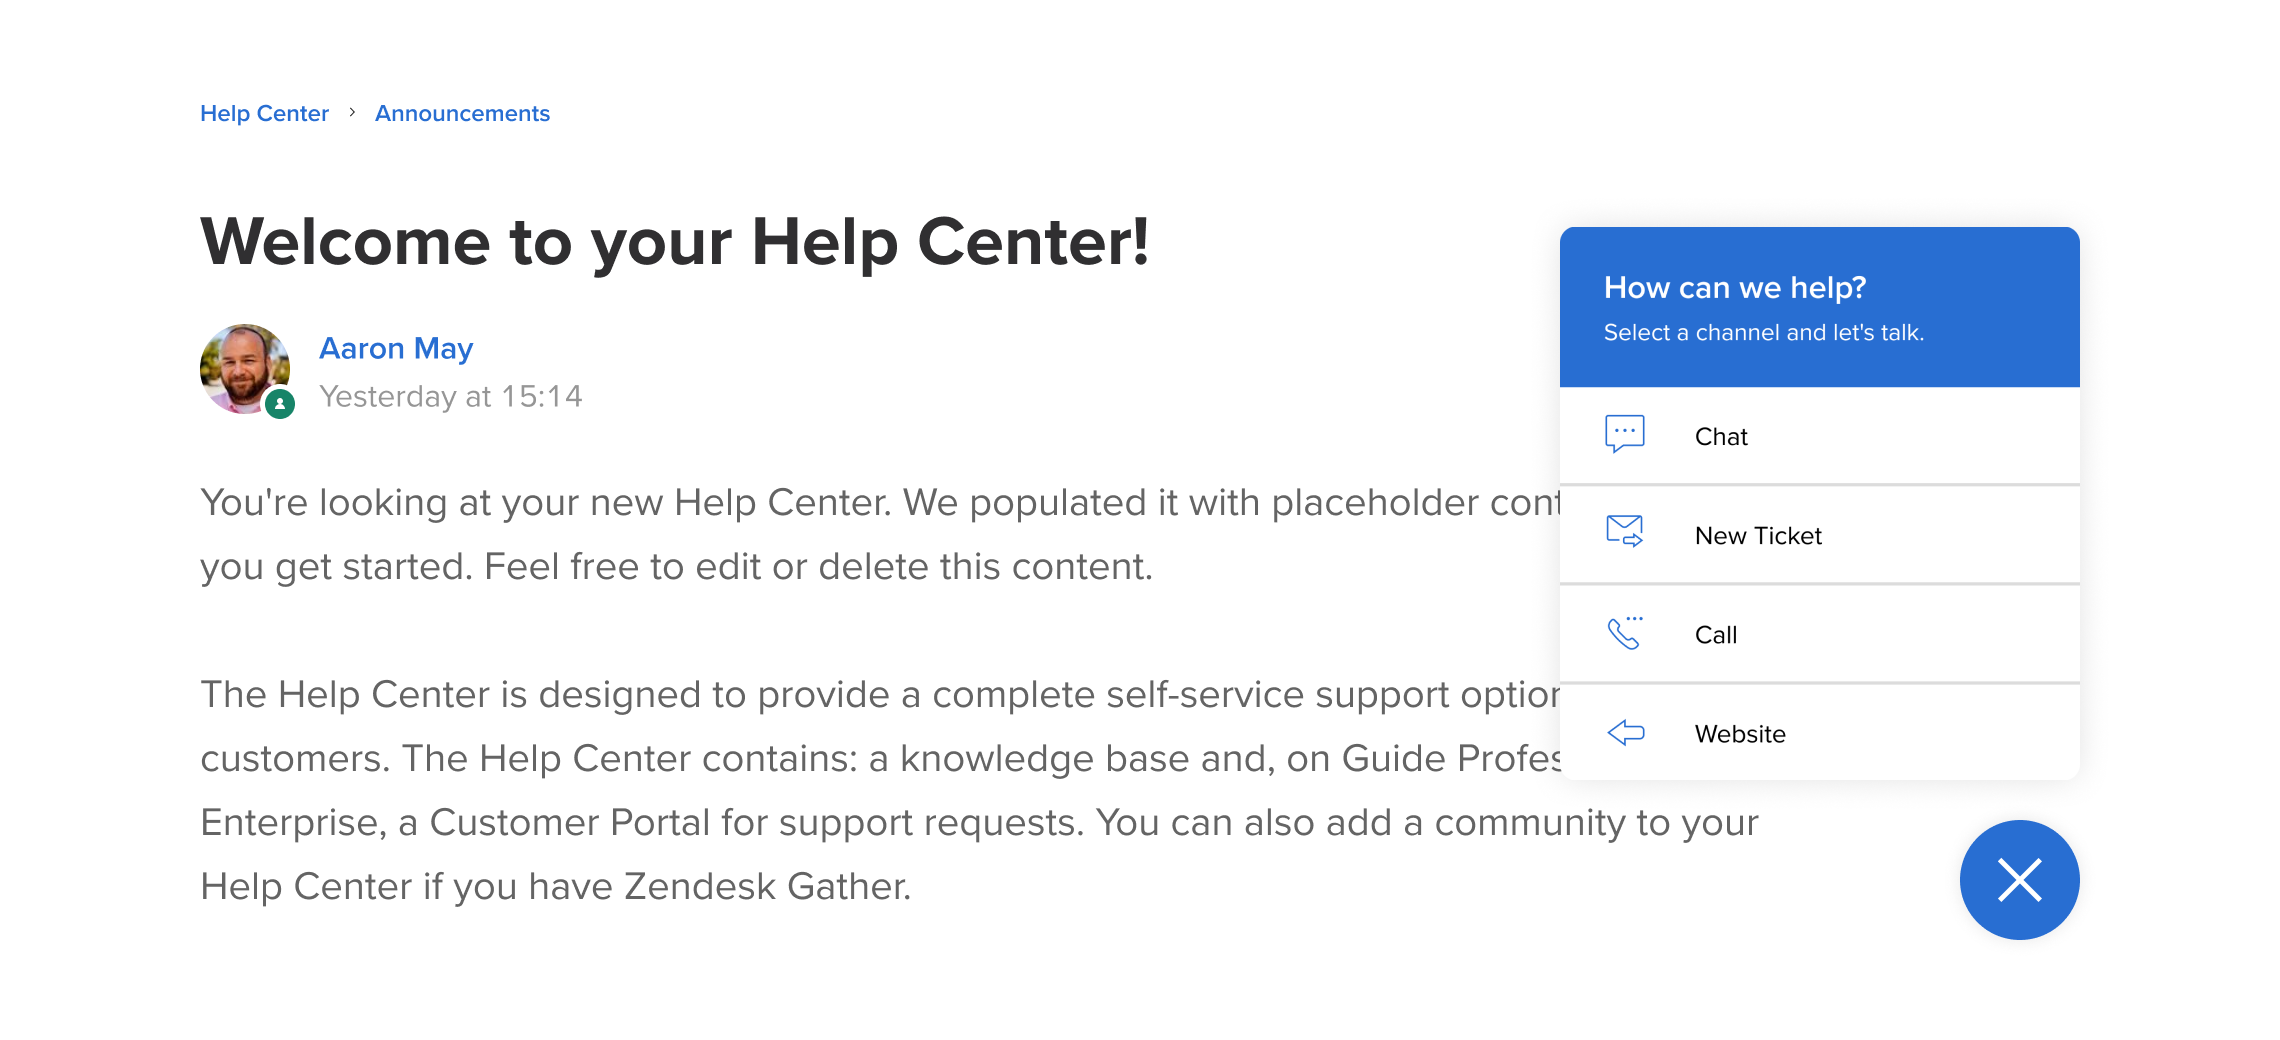 Por que os recursos não aparecem no site, como comentários e fórum da  equipe do canal? – Help Center